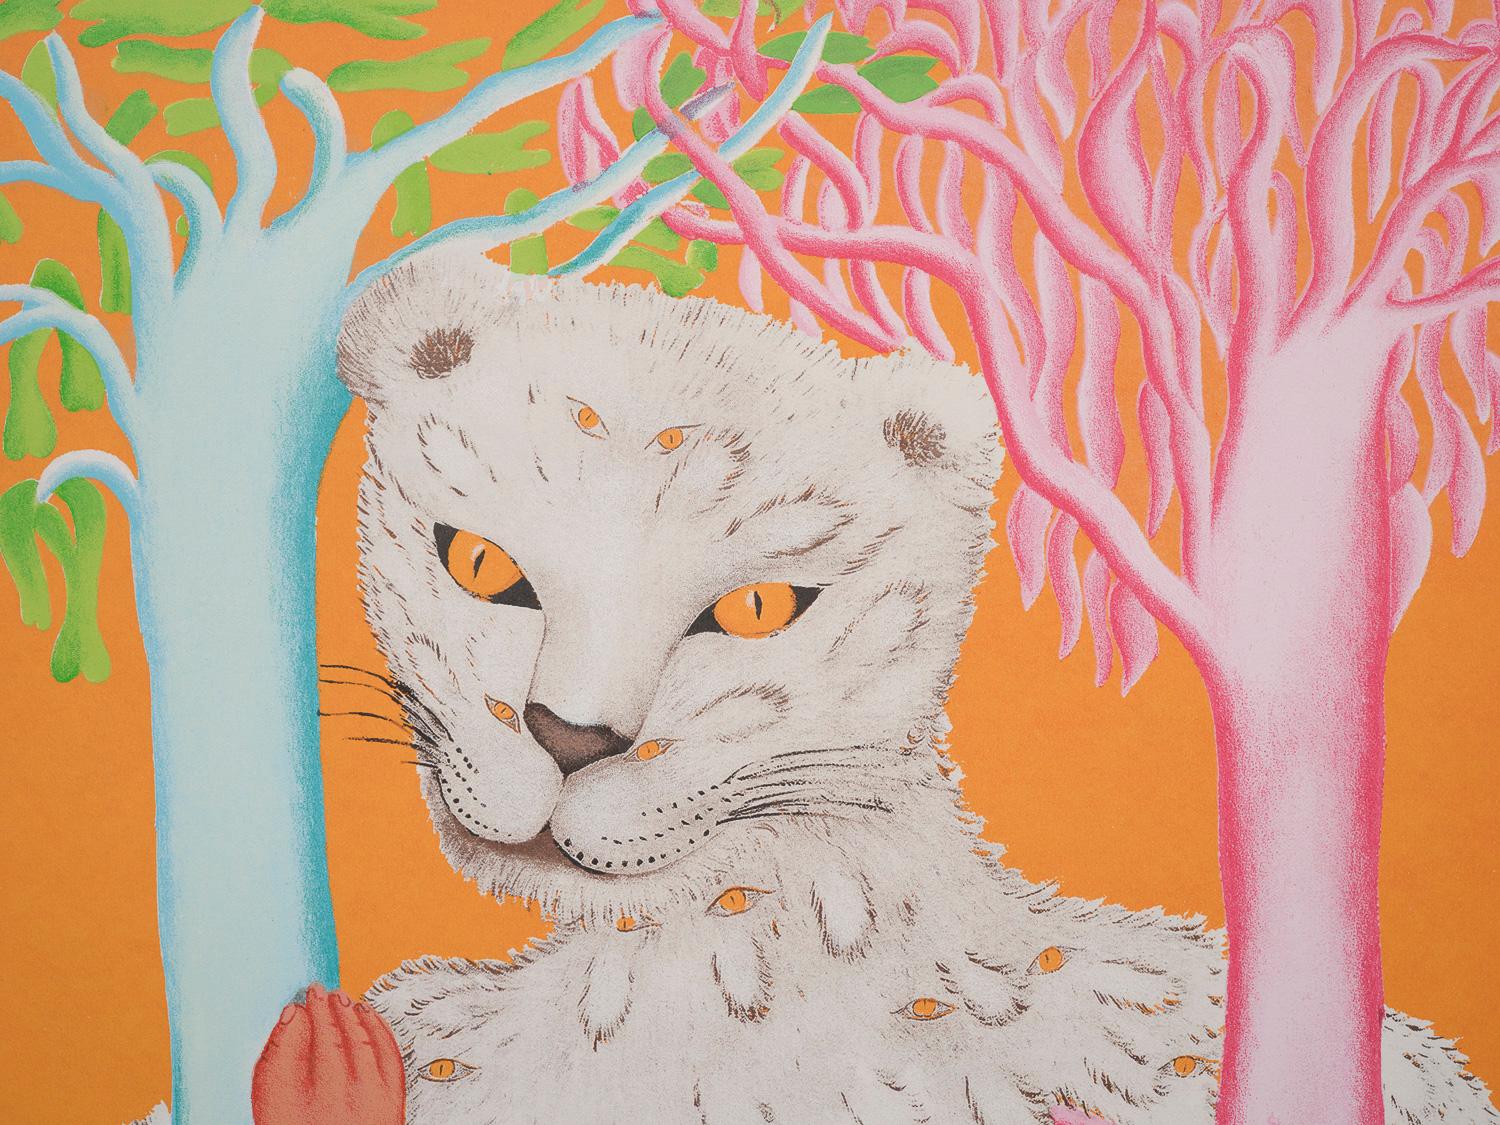 Leoparda de Ojitos - Print by Cecilia Vicuña